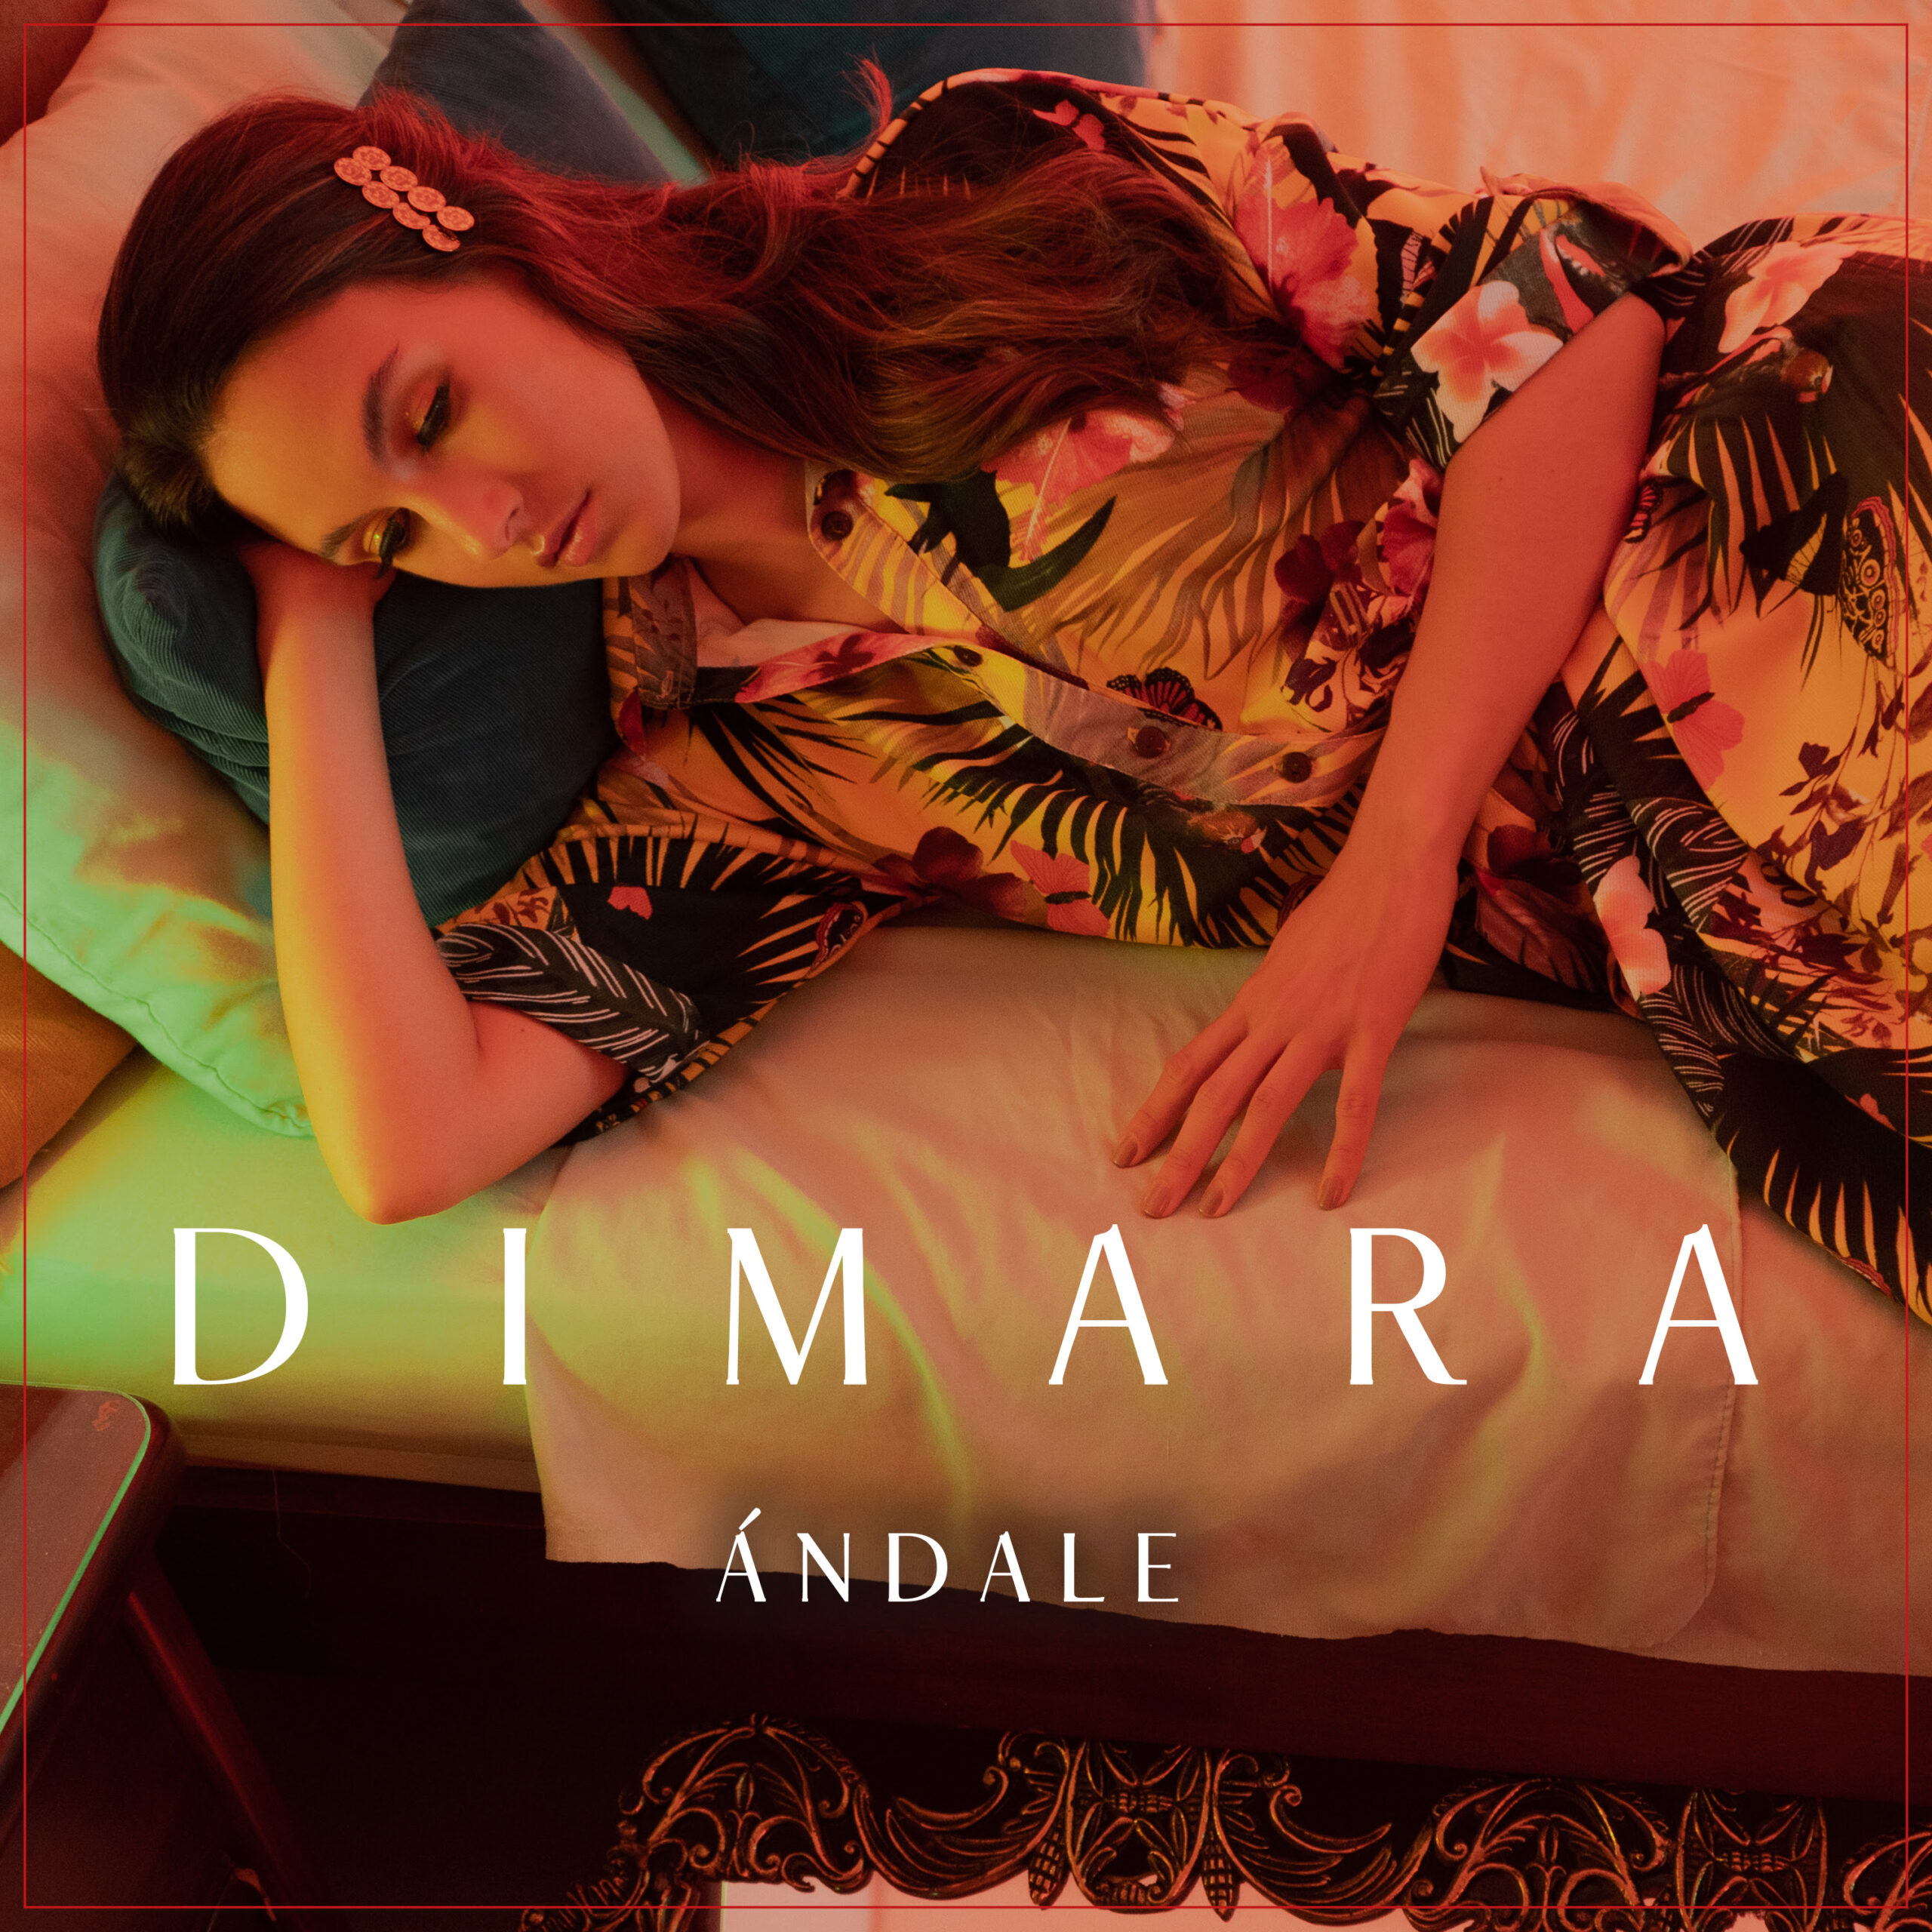 «Ándale» es el 5to capítulo de la serie de canciones que está contando Dimara